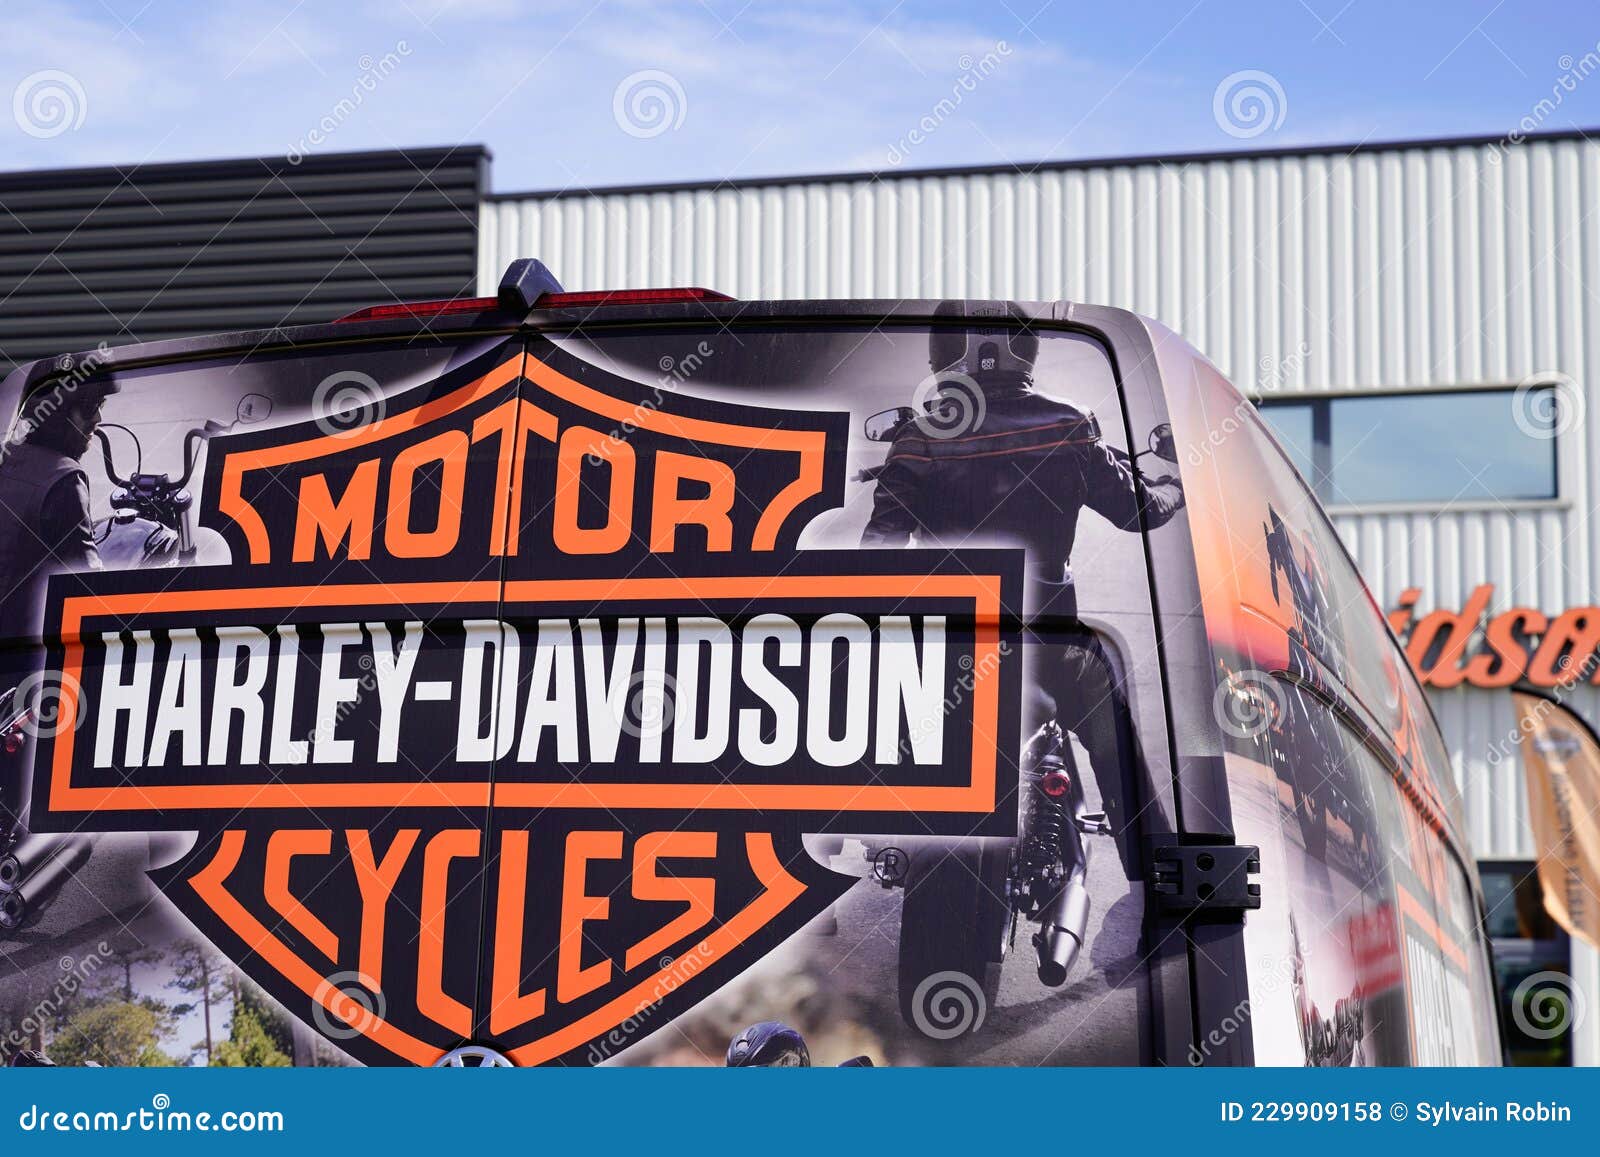 1 731 Harley Davidson Logo Fotos Kostenlose Und Royalty Free Stock Fotos Von Dreamstime